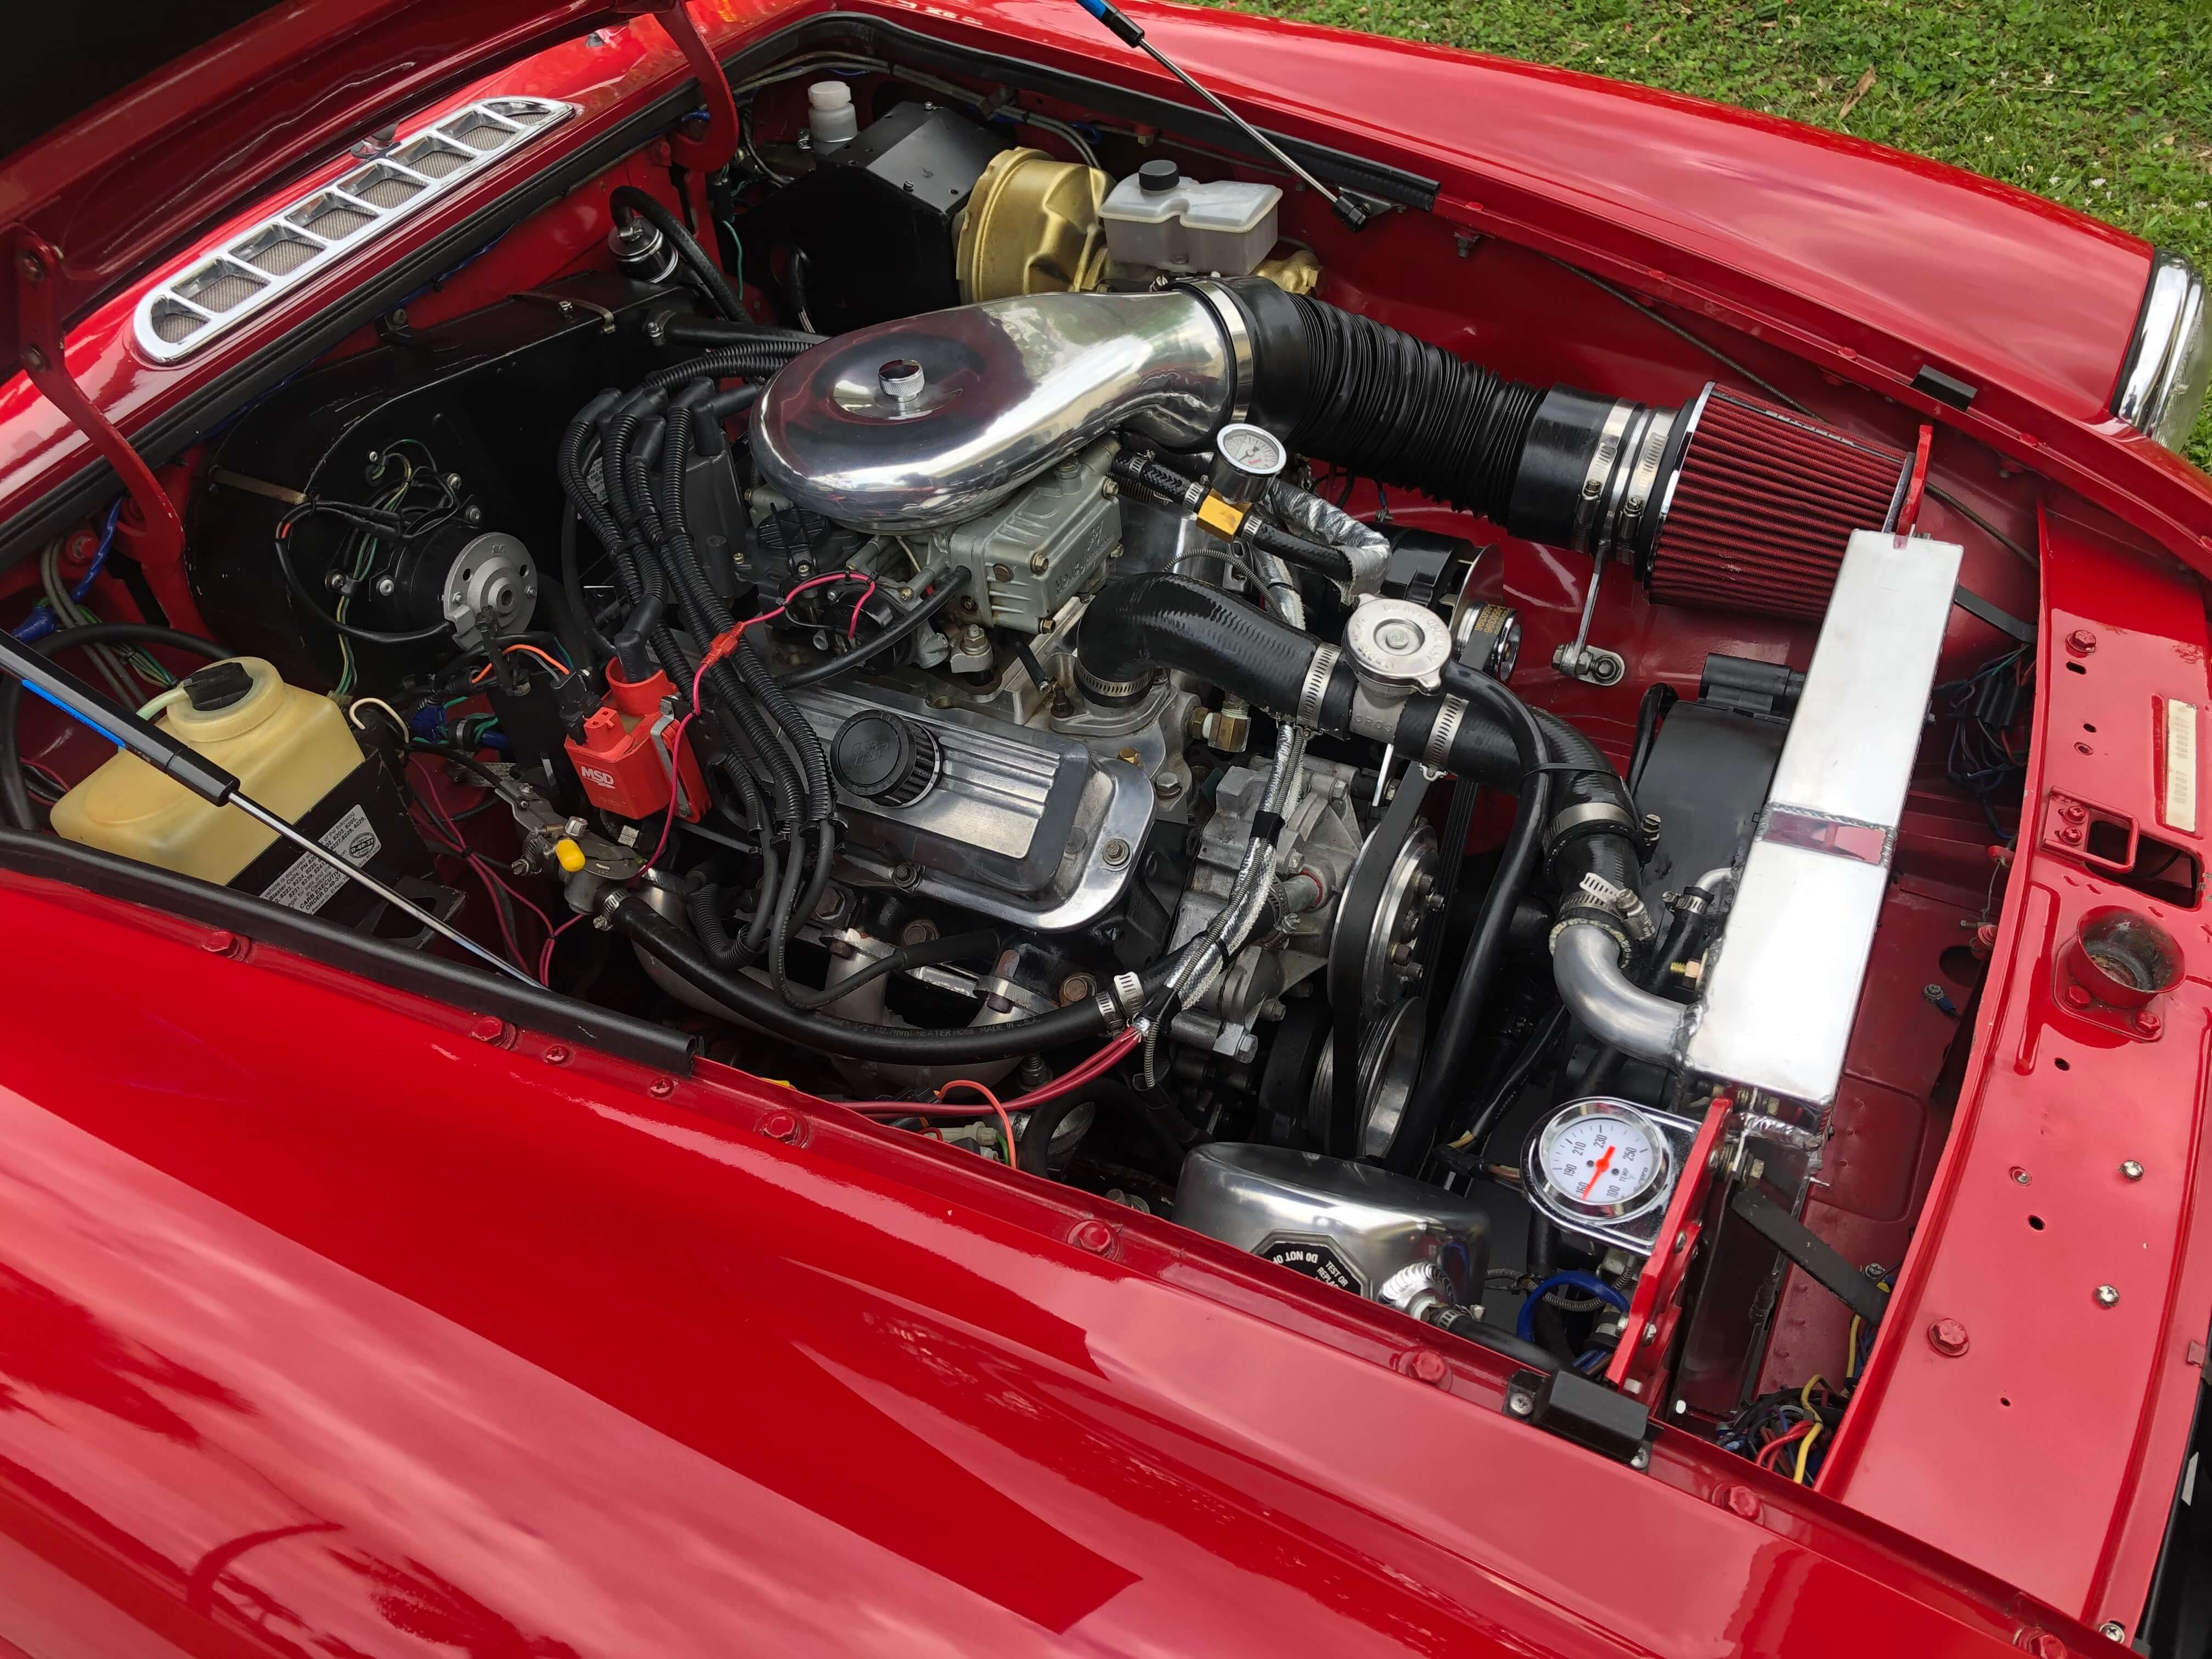 1978 MGB V6 engine